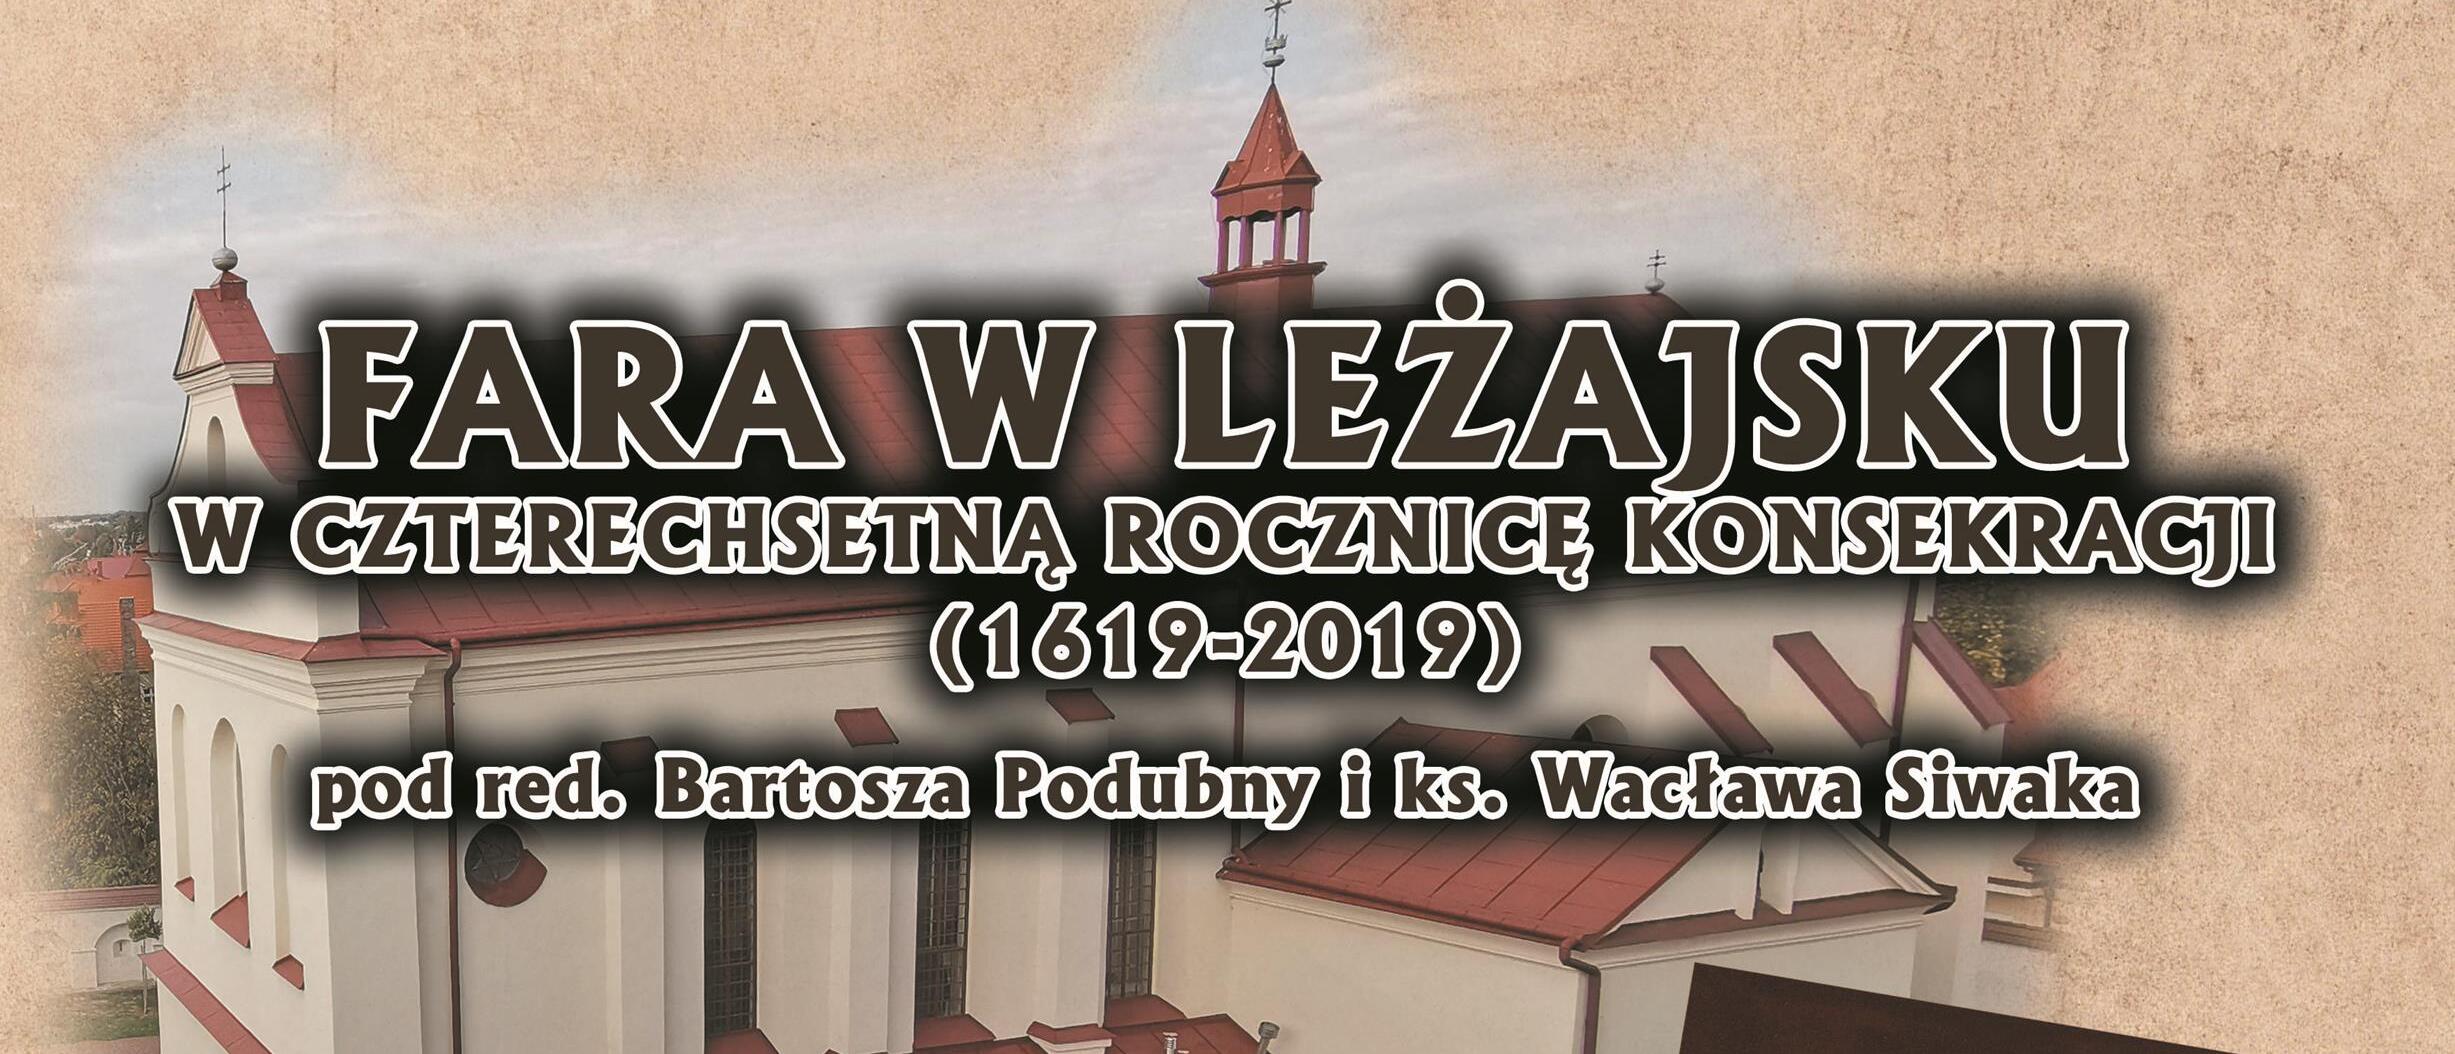 Fara w Leżajsku (1619-2019) – zaproszenie na promocję książki